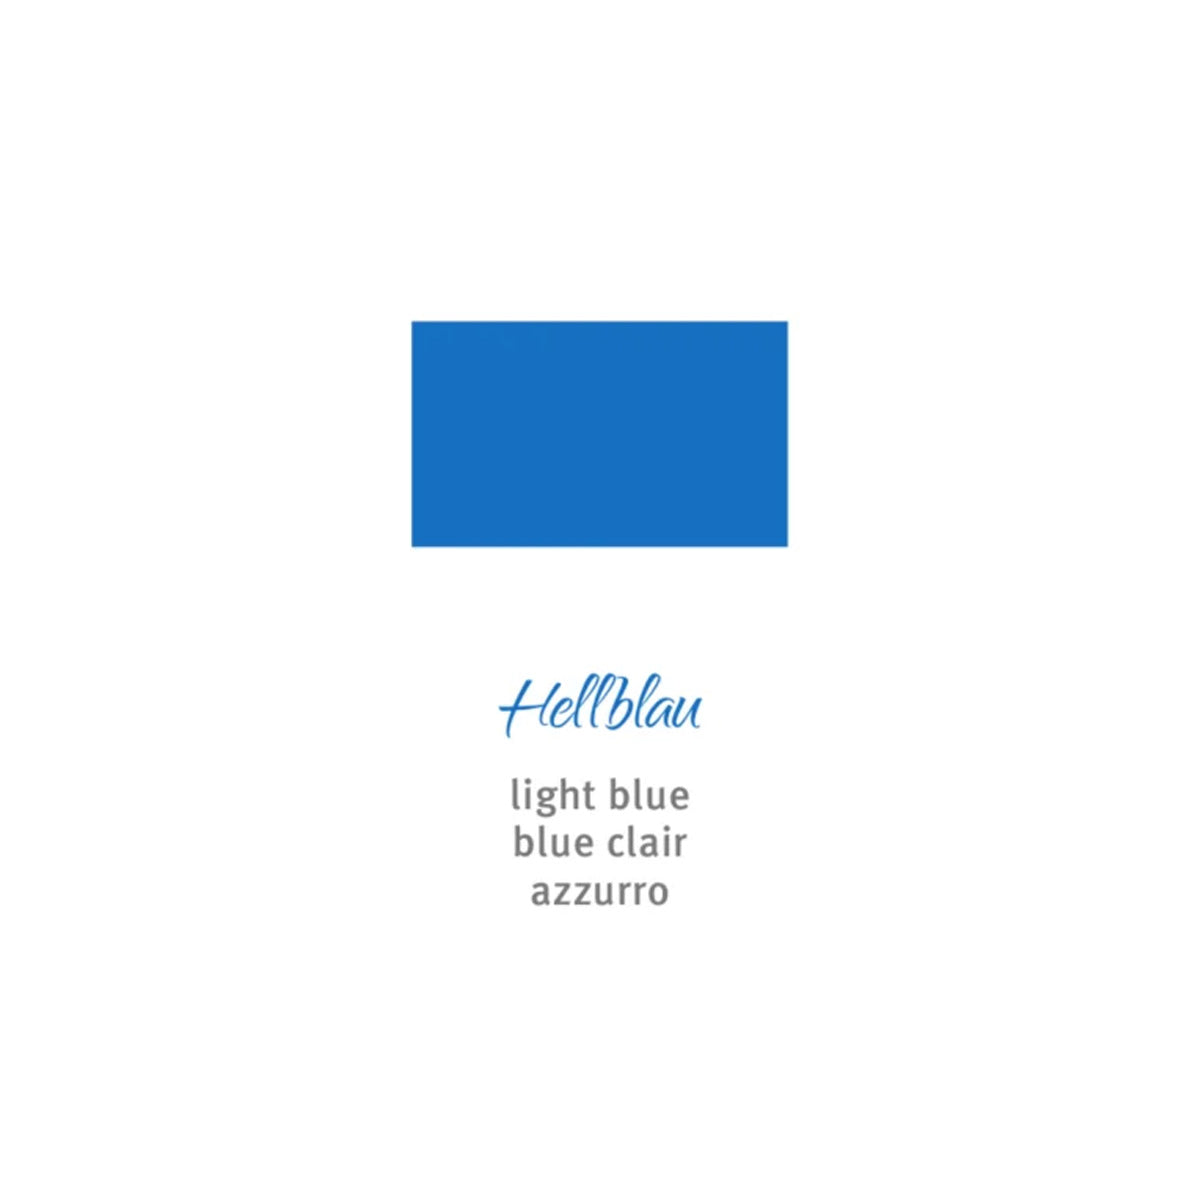 Rohrer + Klingner documentus, light blue